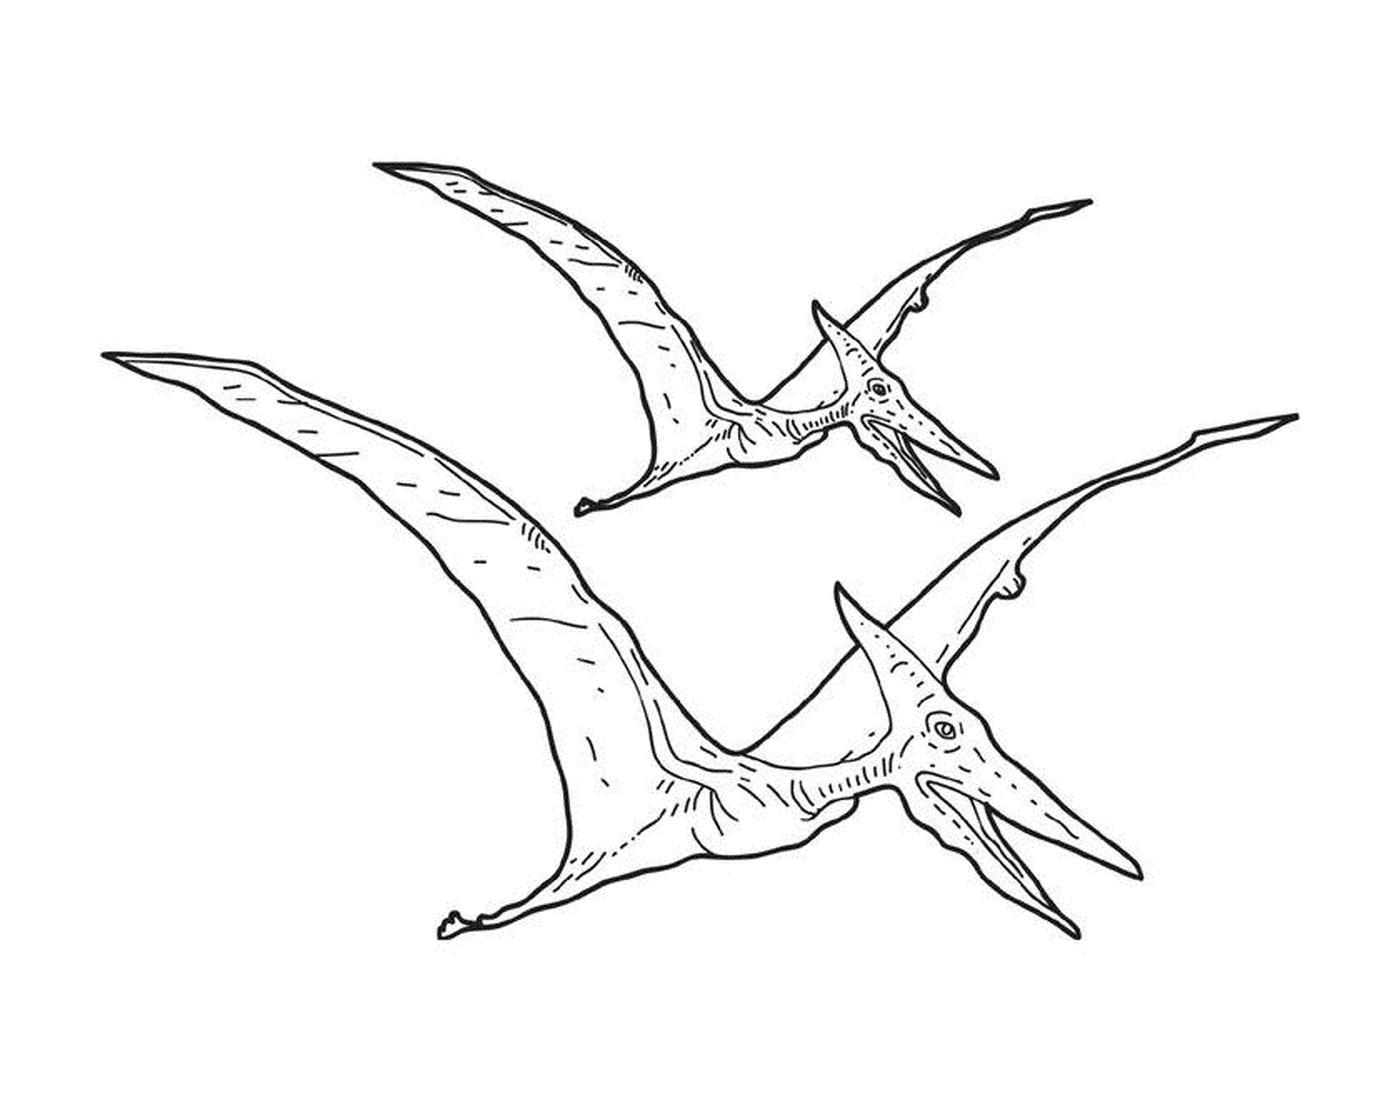  Zwei Pterodactyle fliegen in der Luft 